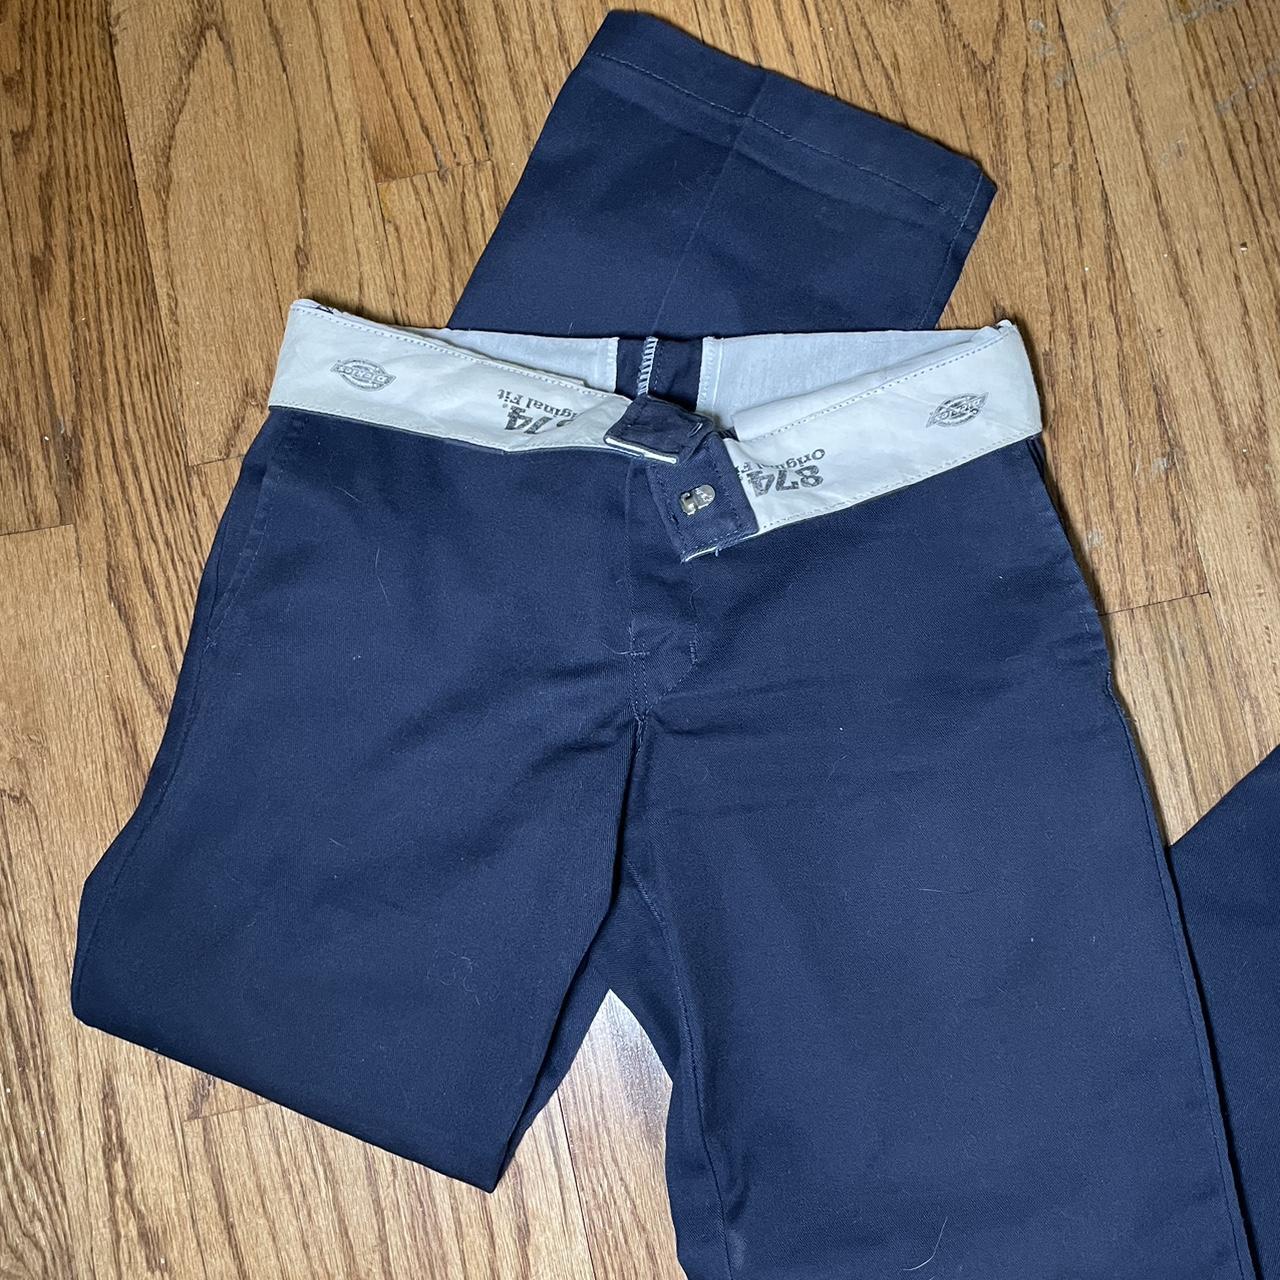 Dickies Women's Navy Trousers